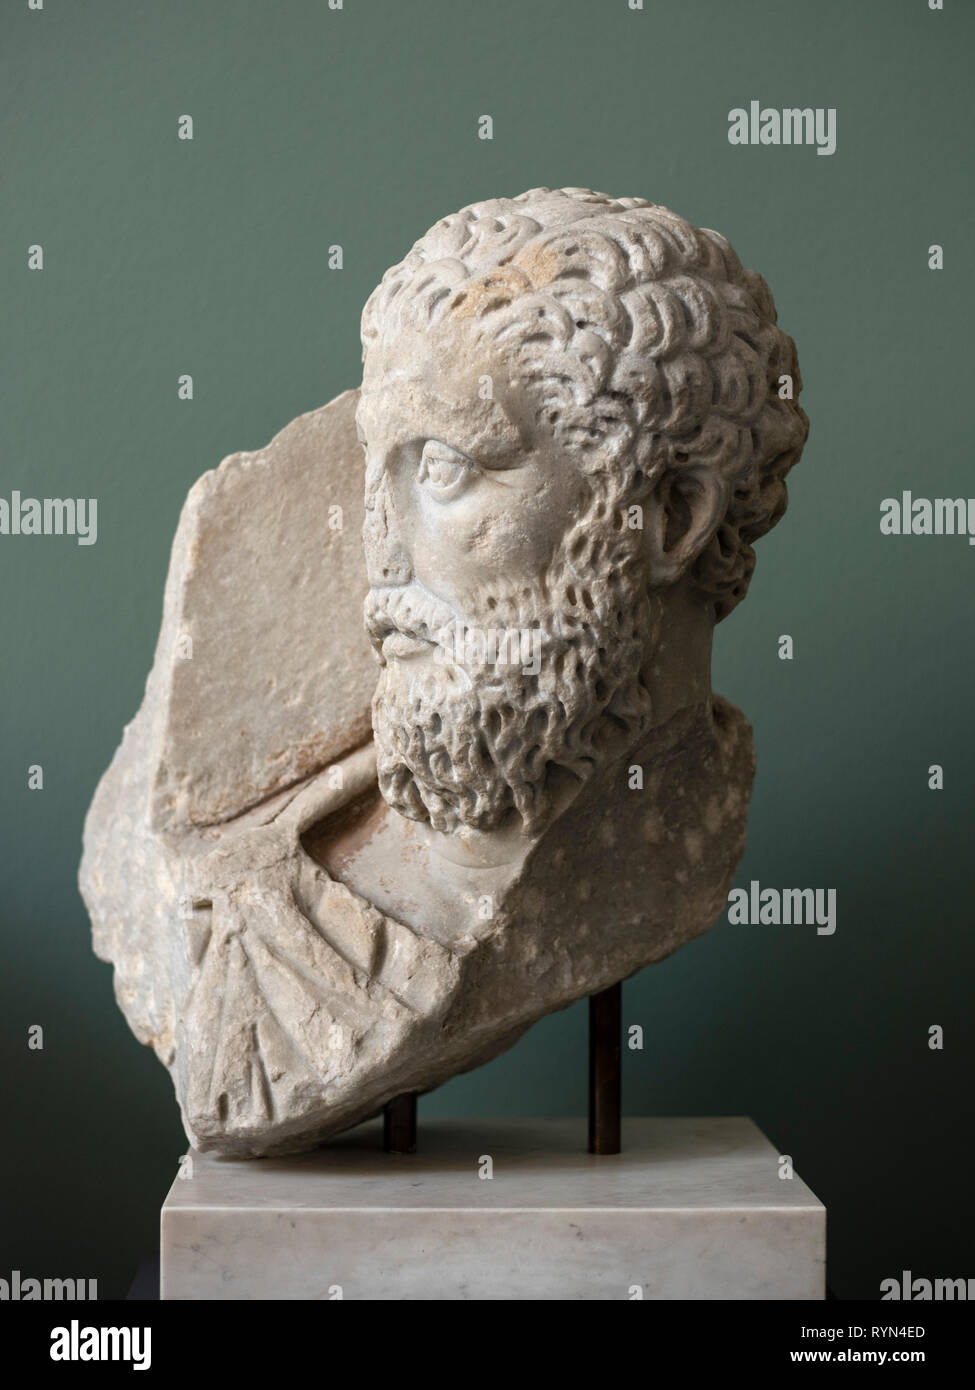 Copenhague. Dinamarca. Busto retrato del emperador romano Marcus Aurelius, Ny Carlsberg Glyptotek. Marcus Aurelius Antoninus Augustus (121 d.c. - 180 AD) Foto de stock